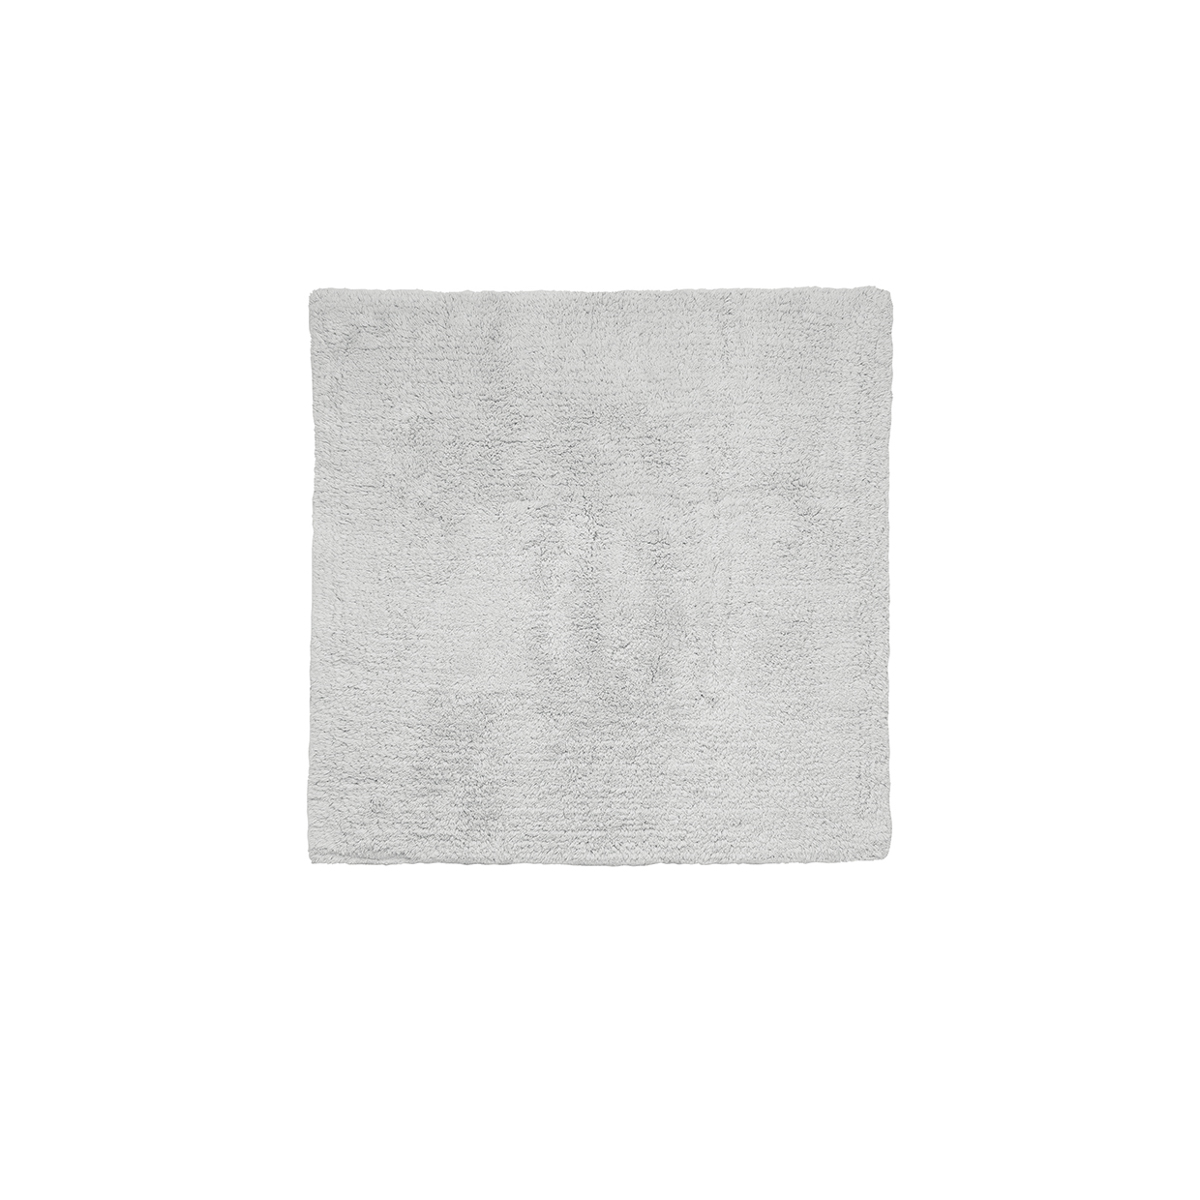 Badematte -TWIN- Micro Chip 60 x 60 cm. Material: Baumwolle. Von Blomus.